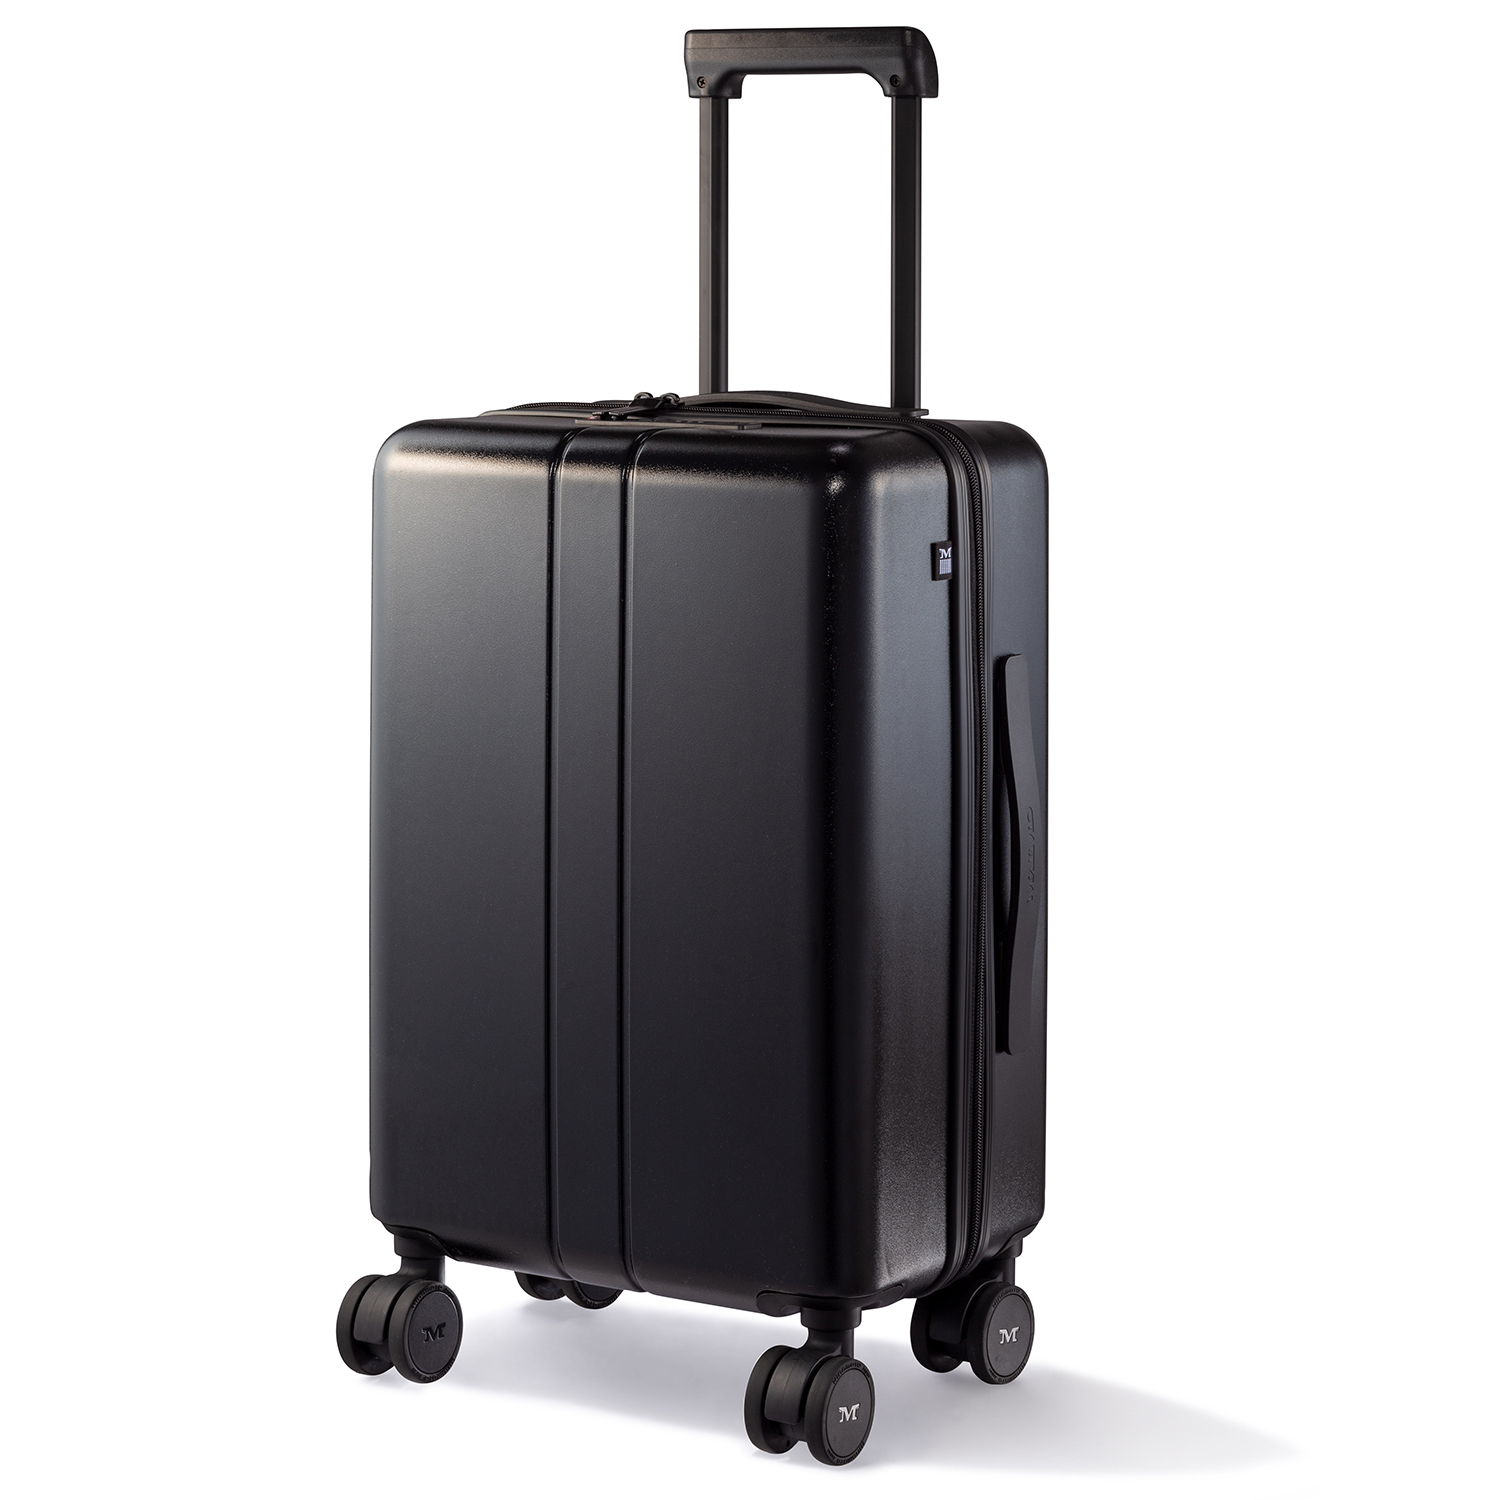 スーツケース キャリーケース MAIMO公式 キャリーバッグ Sサイズ 機内持ち込み 日本企業 超軽量 大容量 静音 ダブルキャスター  最新セキュリティー